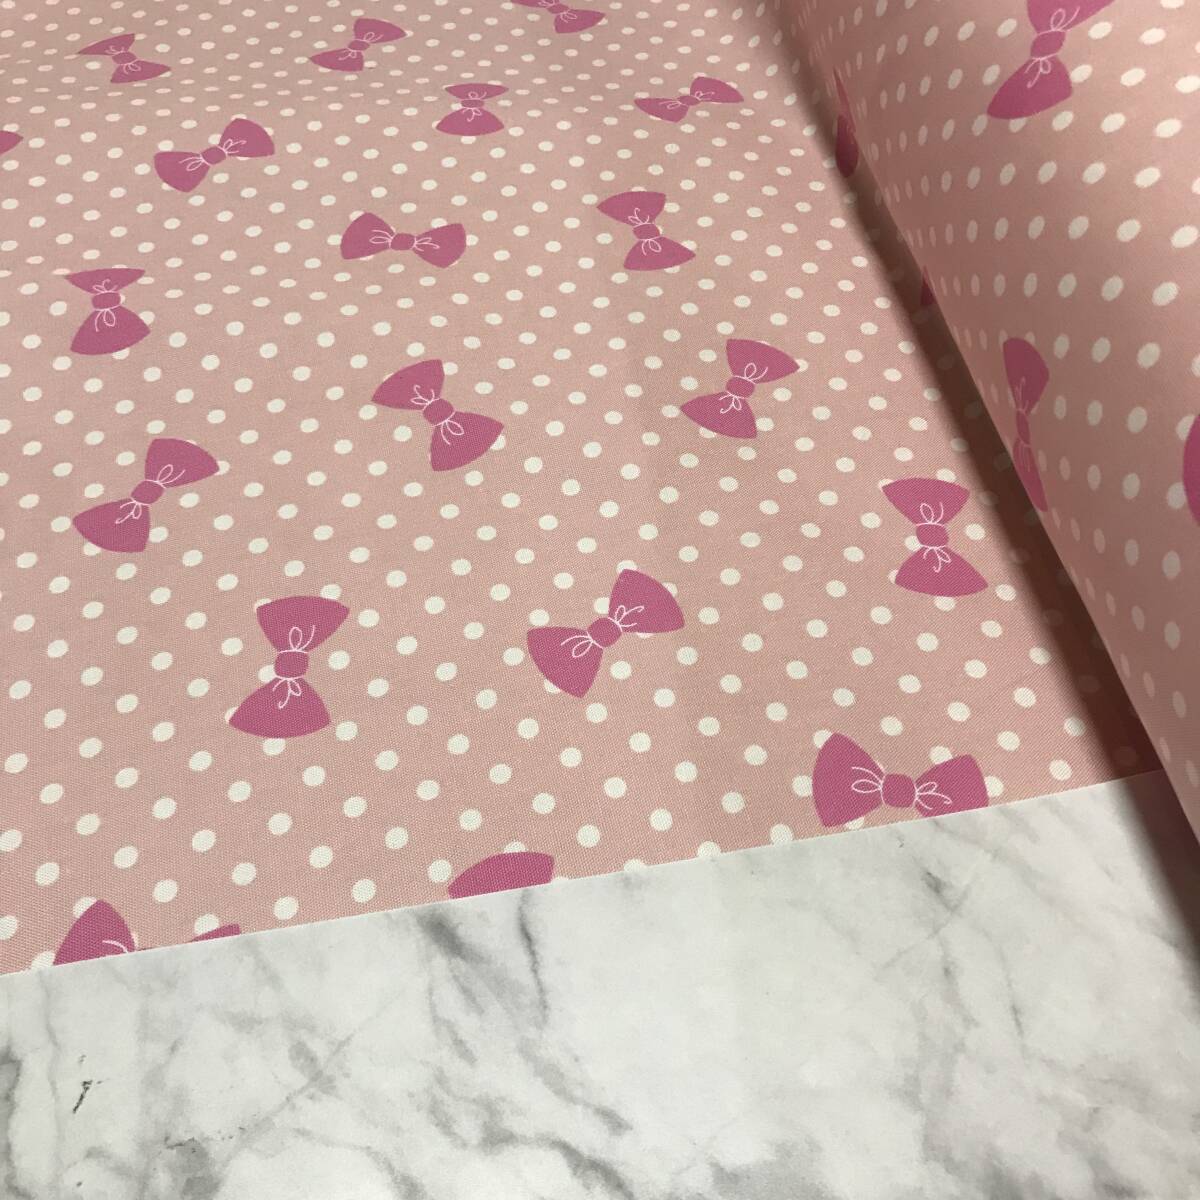 日本製 3m Handworks Fabric⑧ ドットリボン柄 ピンク オックス ハギレの画像1